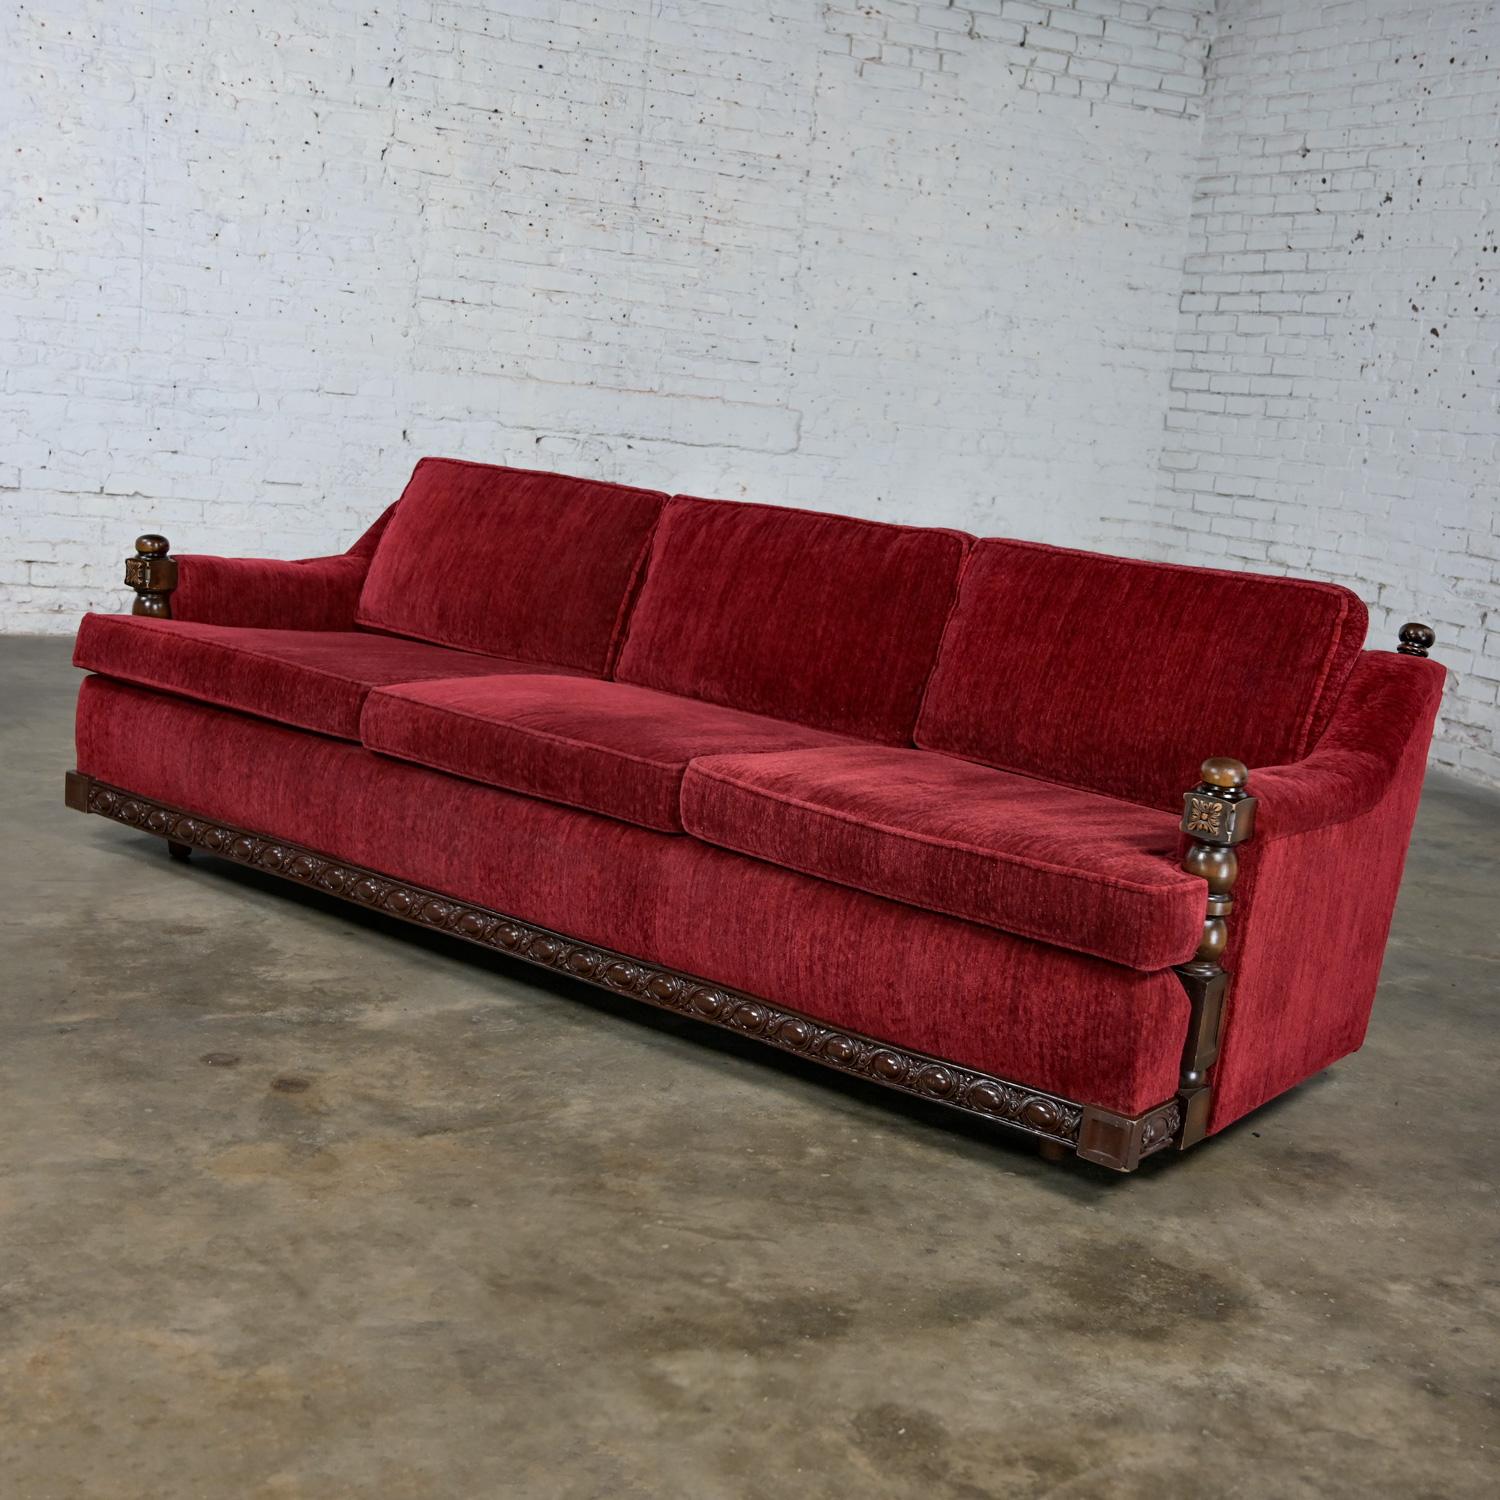 Magnifique canapé vintage Spanish Revival Rustic en chenille rouge dans le style de Artes De Mexico Internationales. Composé d'un cadre en bois foncé, de trois coussins d'assise en mousse avec fermeture éclair, et de trois coussins de dossier en